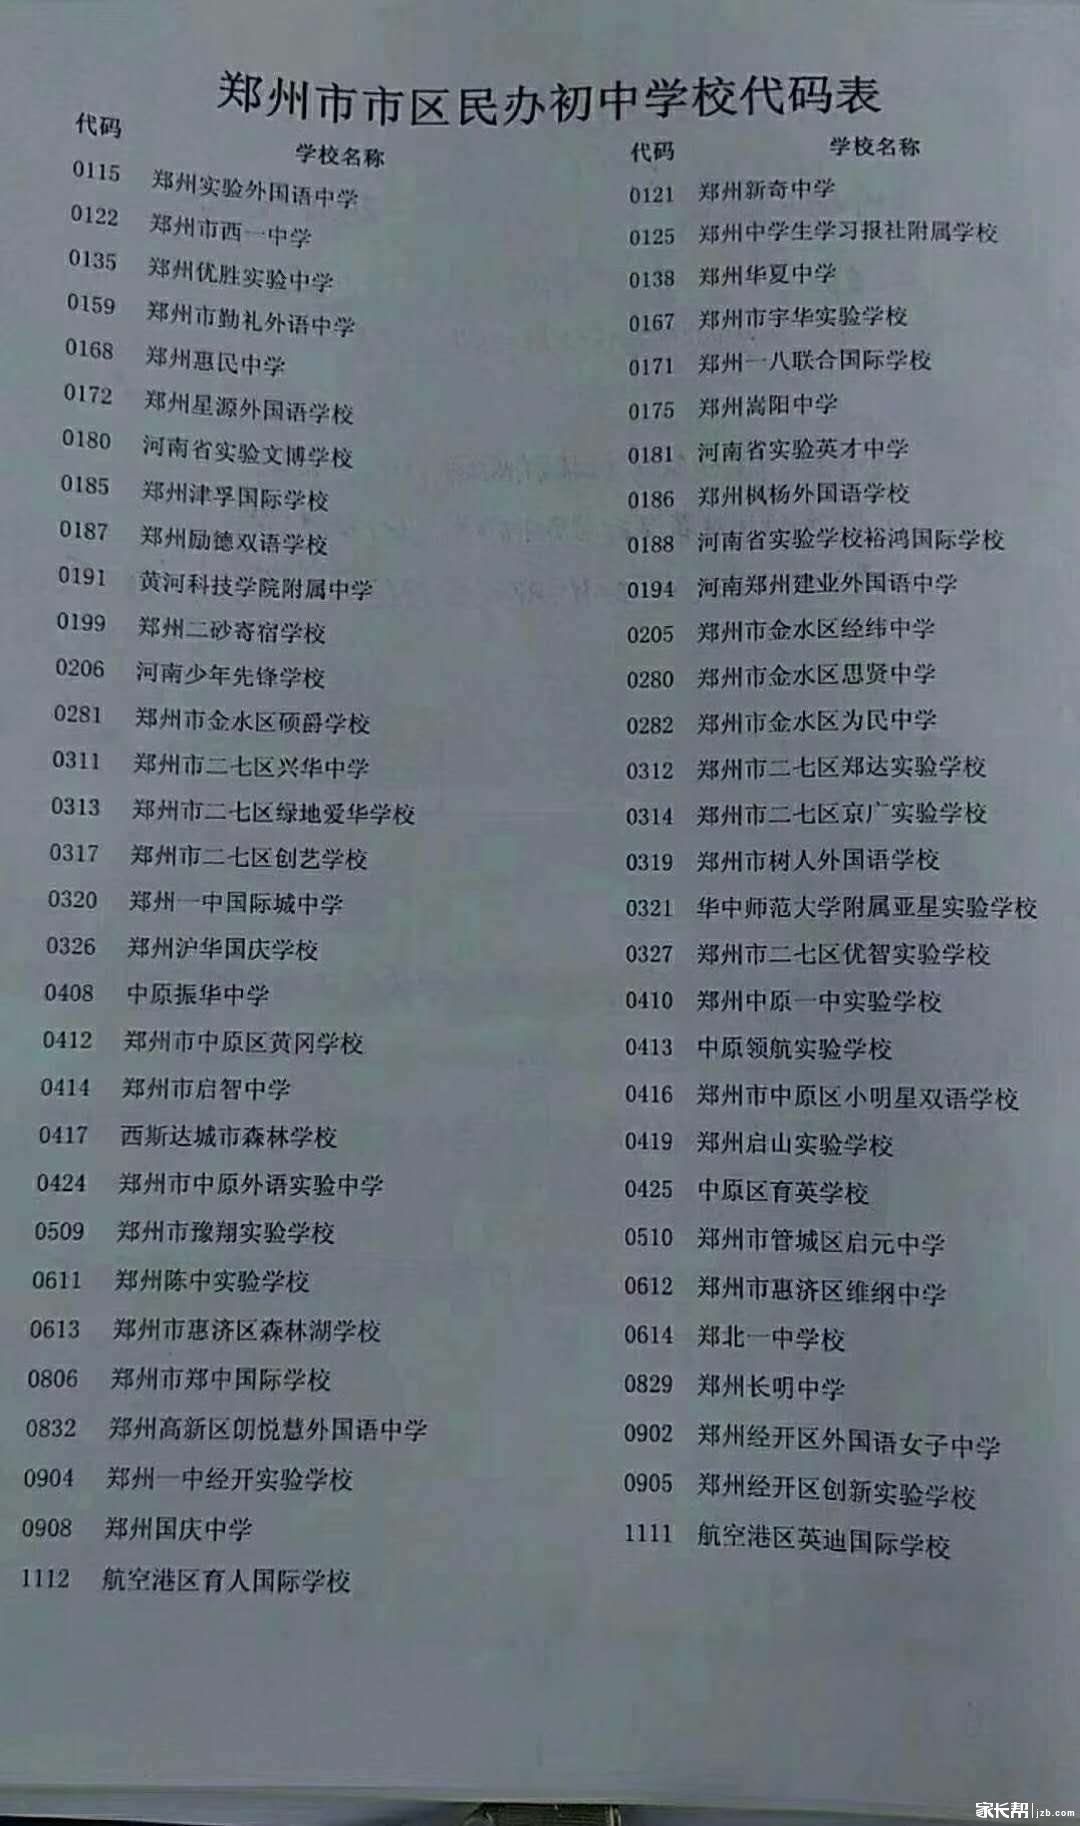 2018郑州民办初中报名表及民办初中学校代码表2